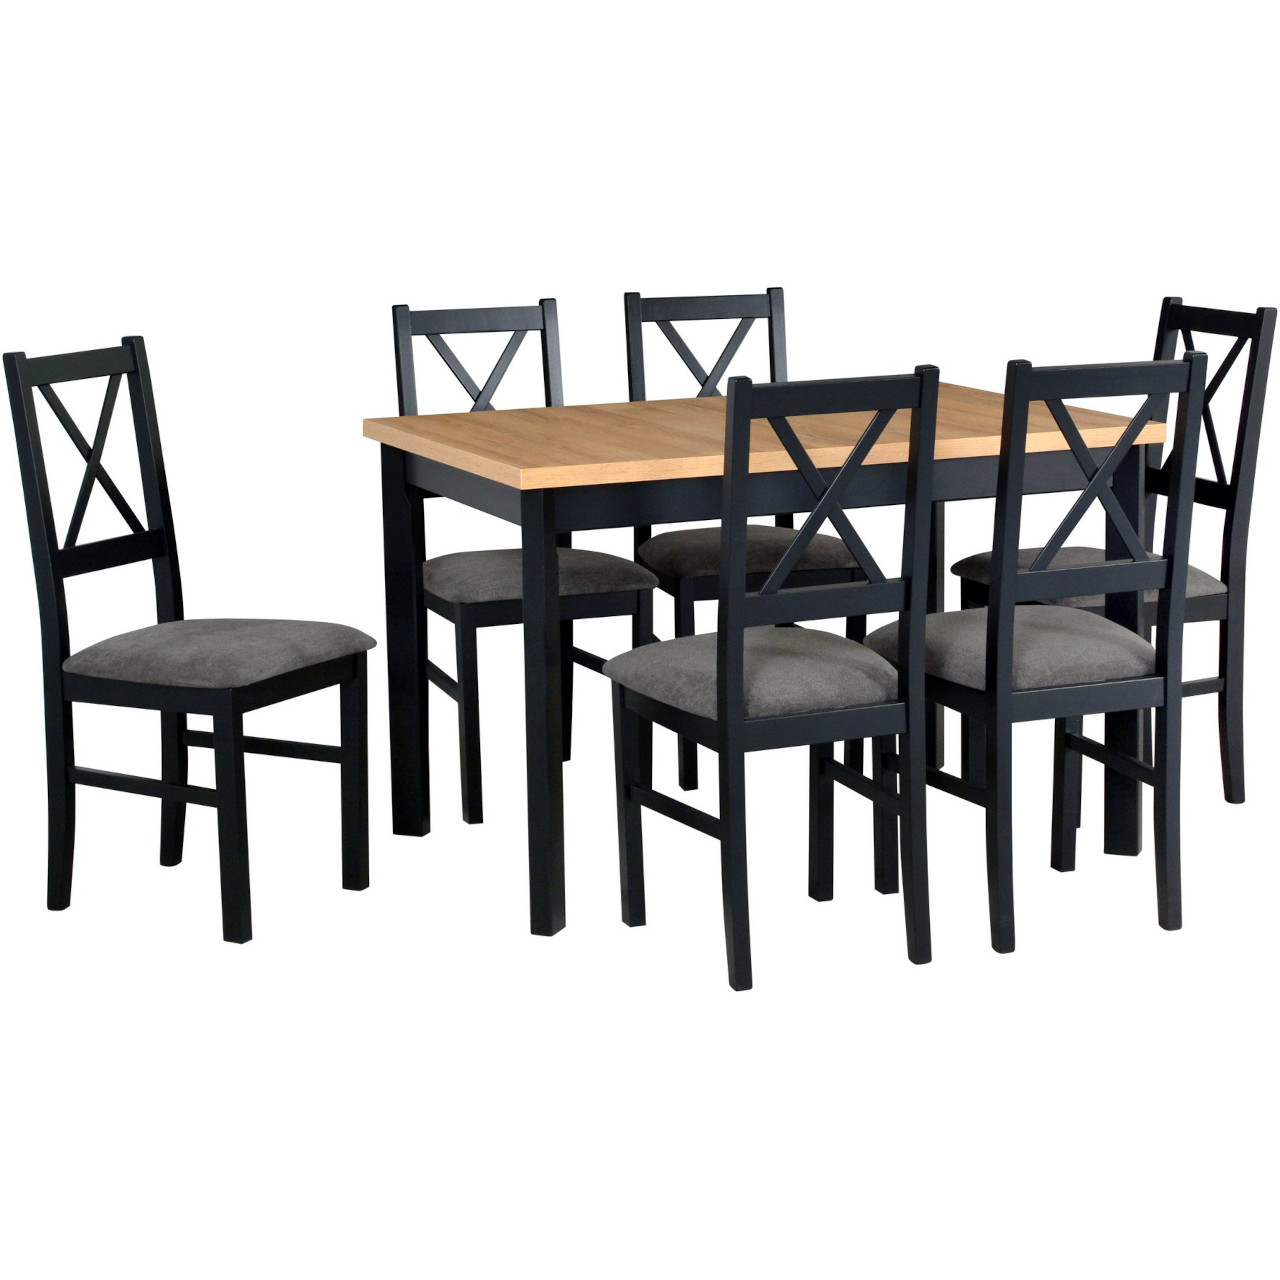 Tisch MAX 5 P grandson laminat / schwarz + Stühle NILO 10 (6Stk.) schwarz / 15B